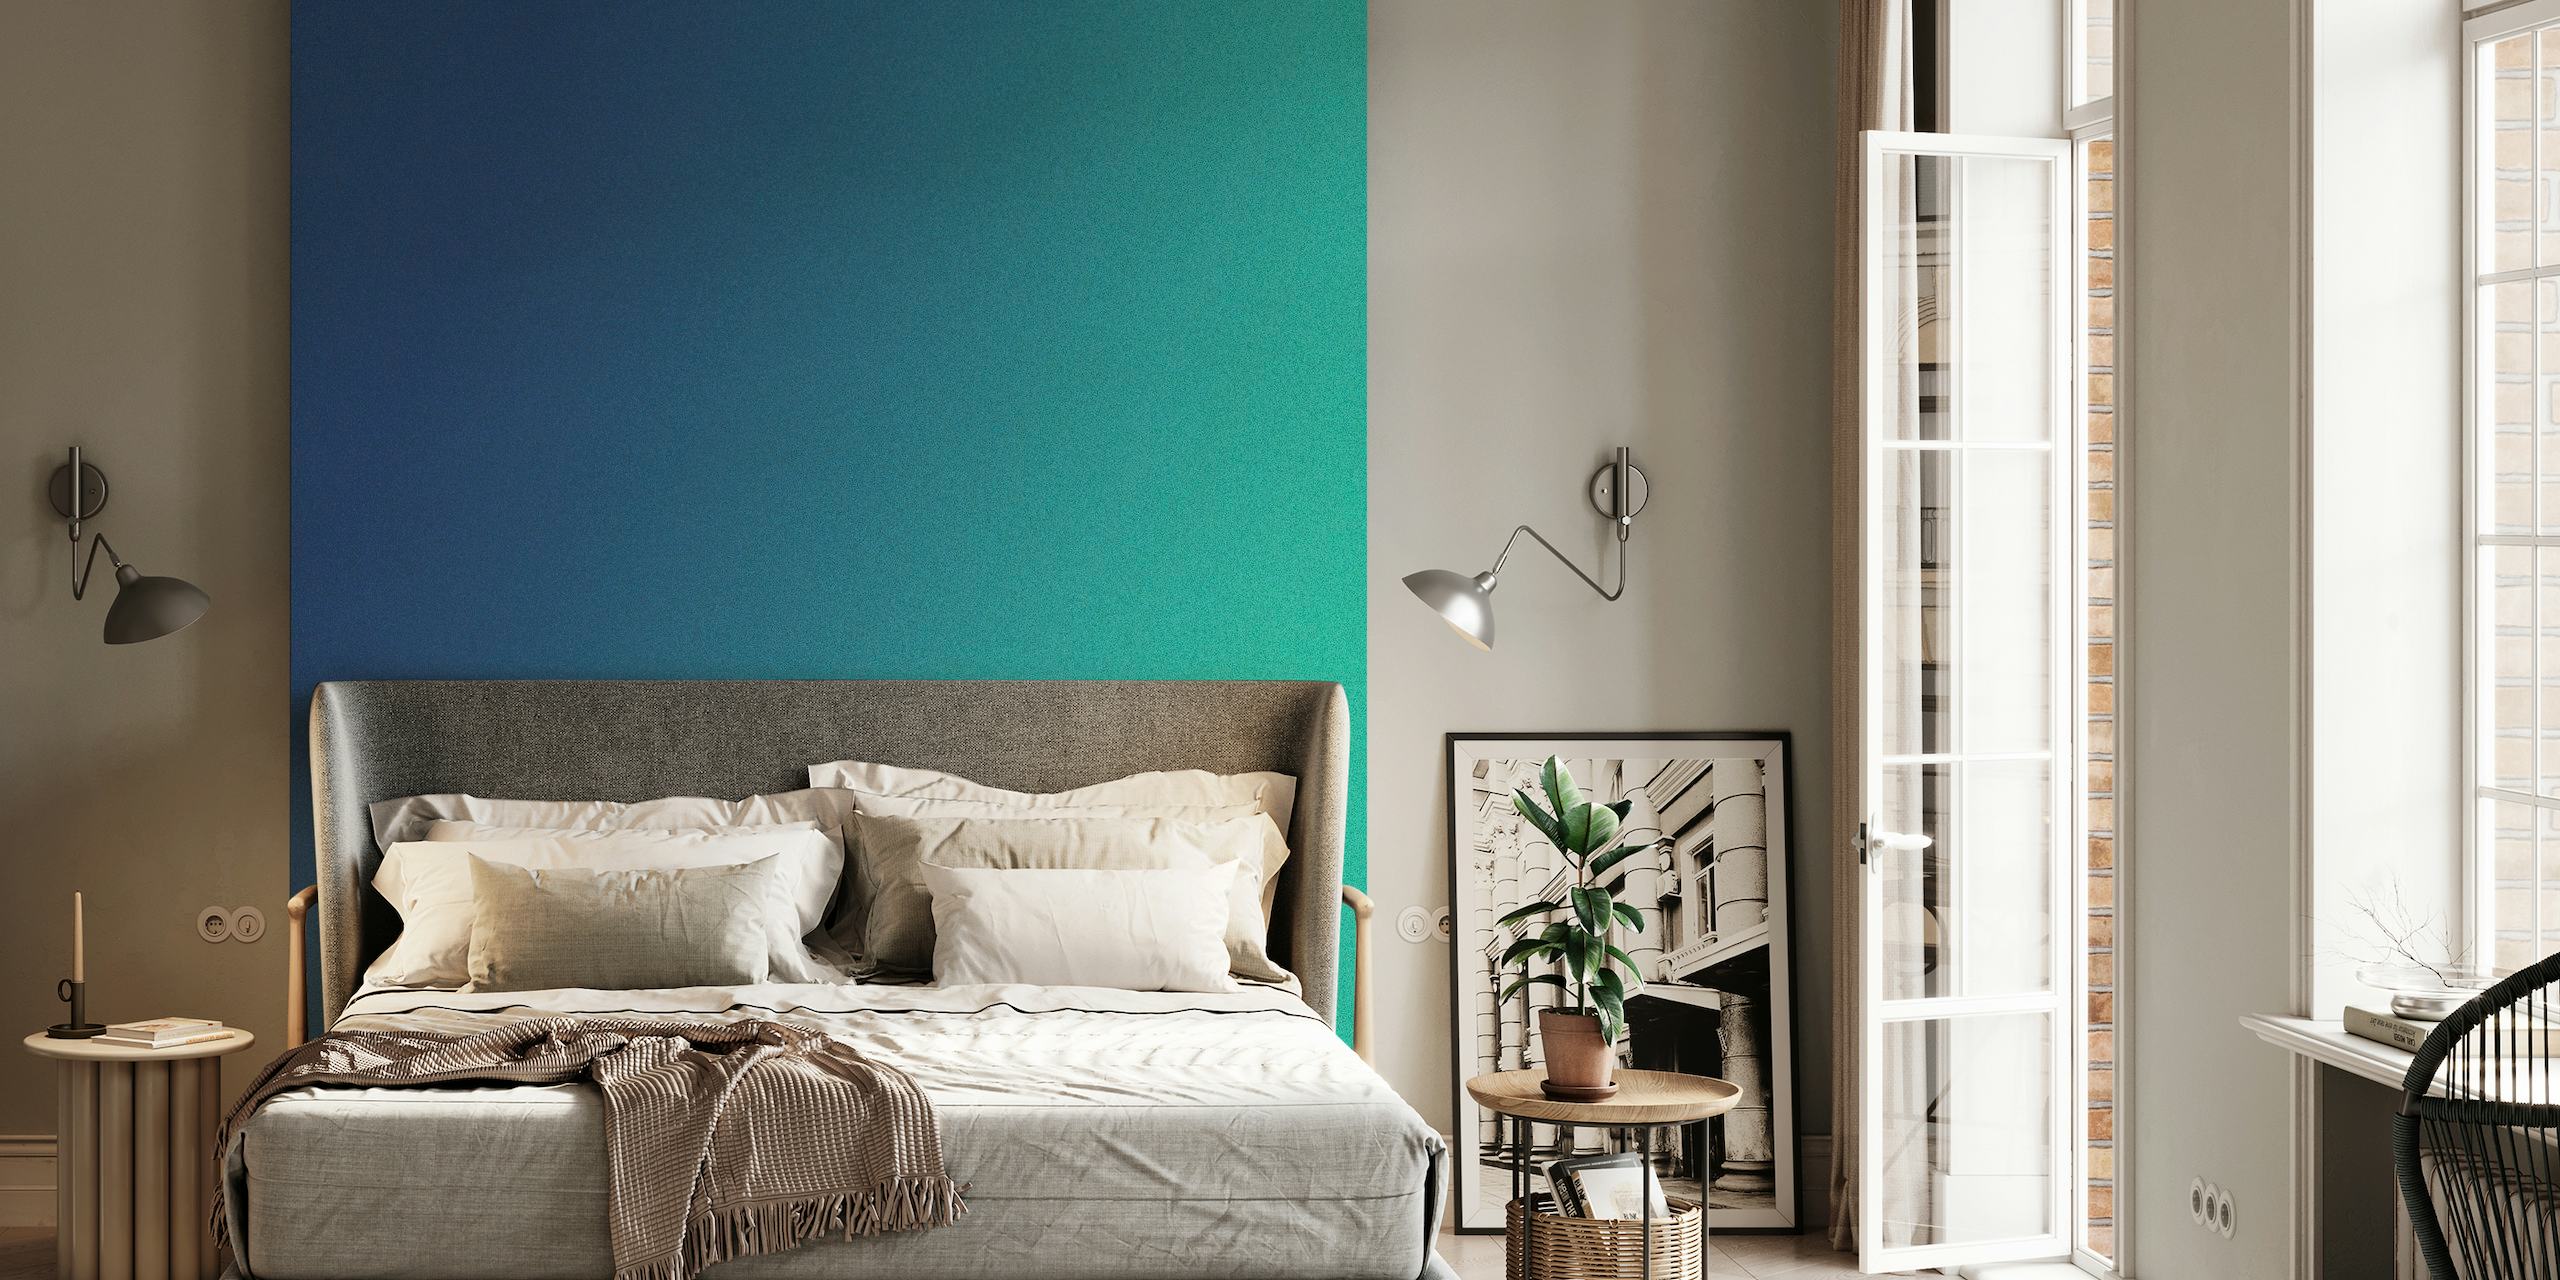 Soft Serenity gradient vægmaleri med blågrøn til himmelblå overgang